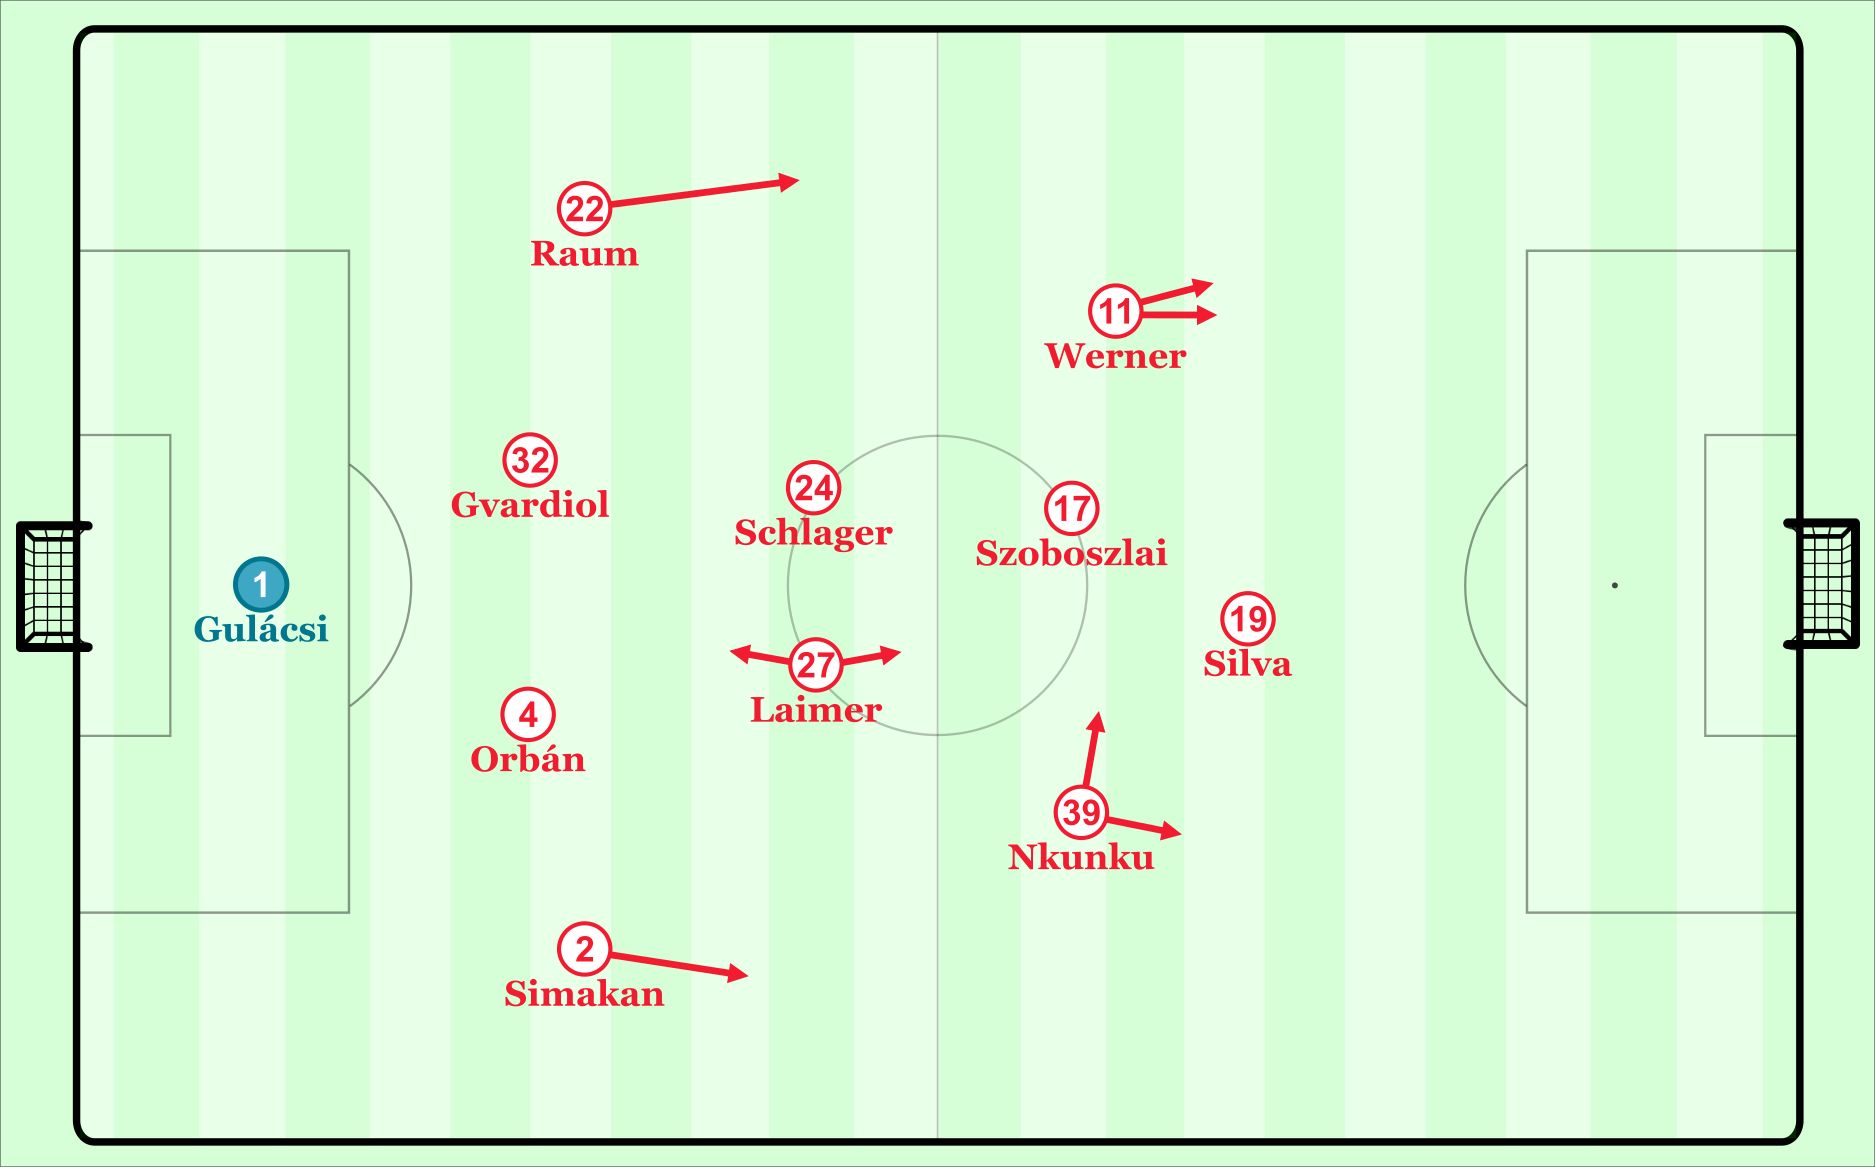 Wird RB Leipzig in dieser Formation am Samstag gegen Borussia Dortmund spielen?